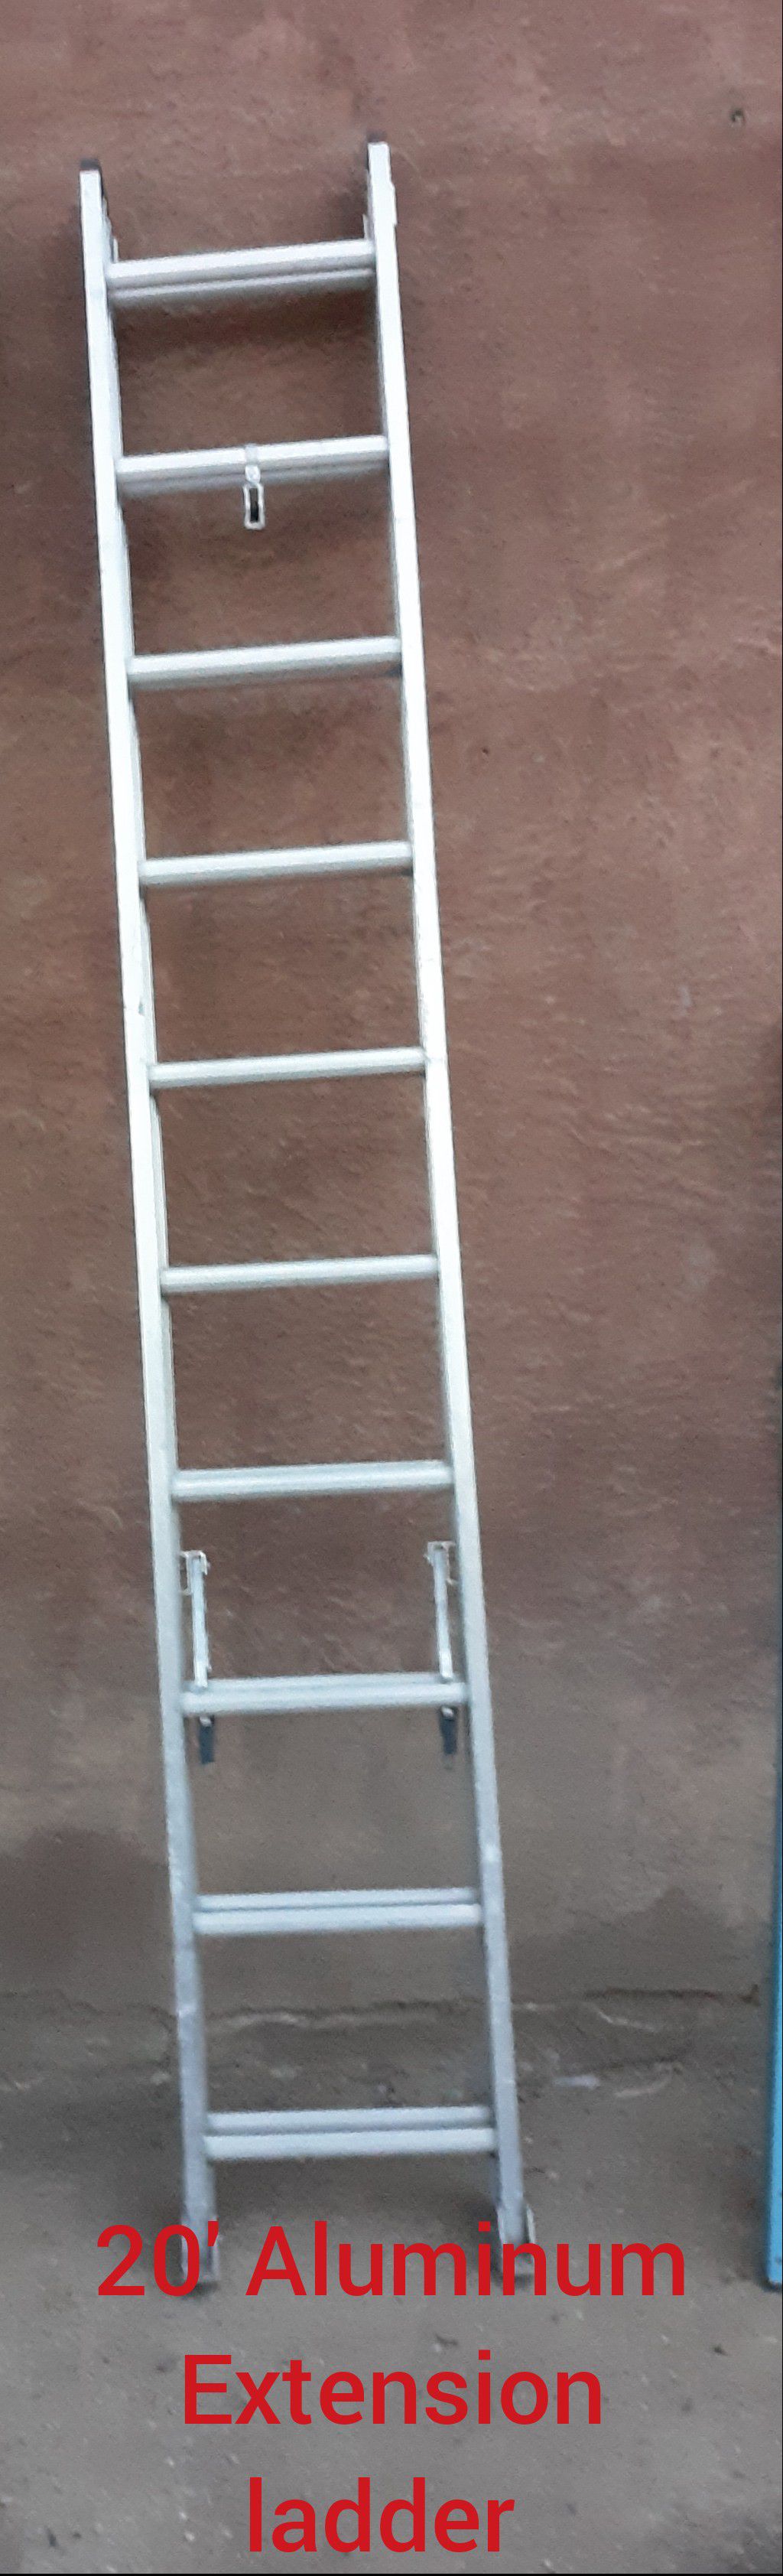 20' Aluminum Extension ladder